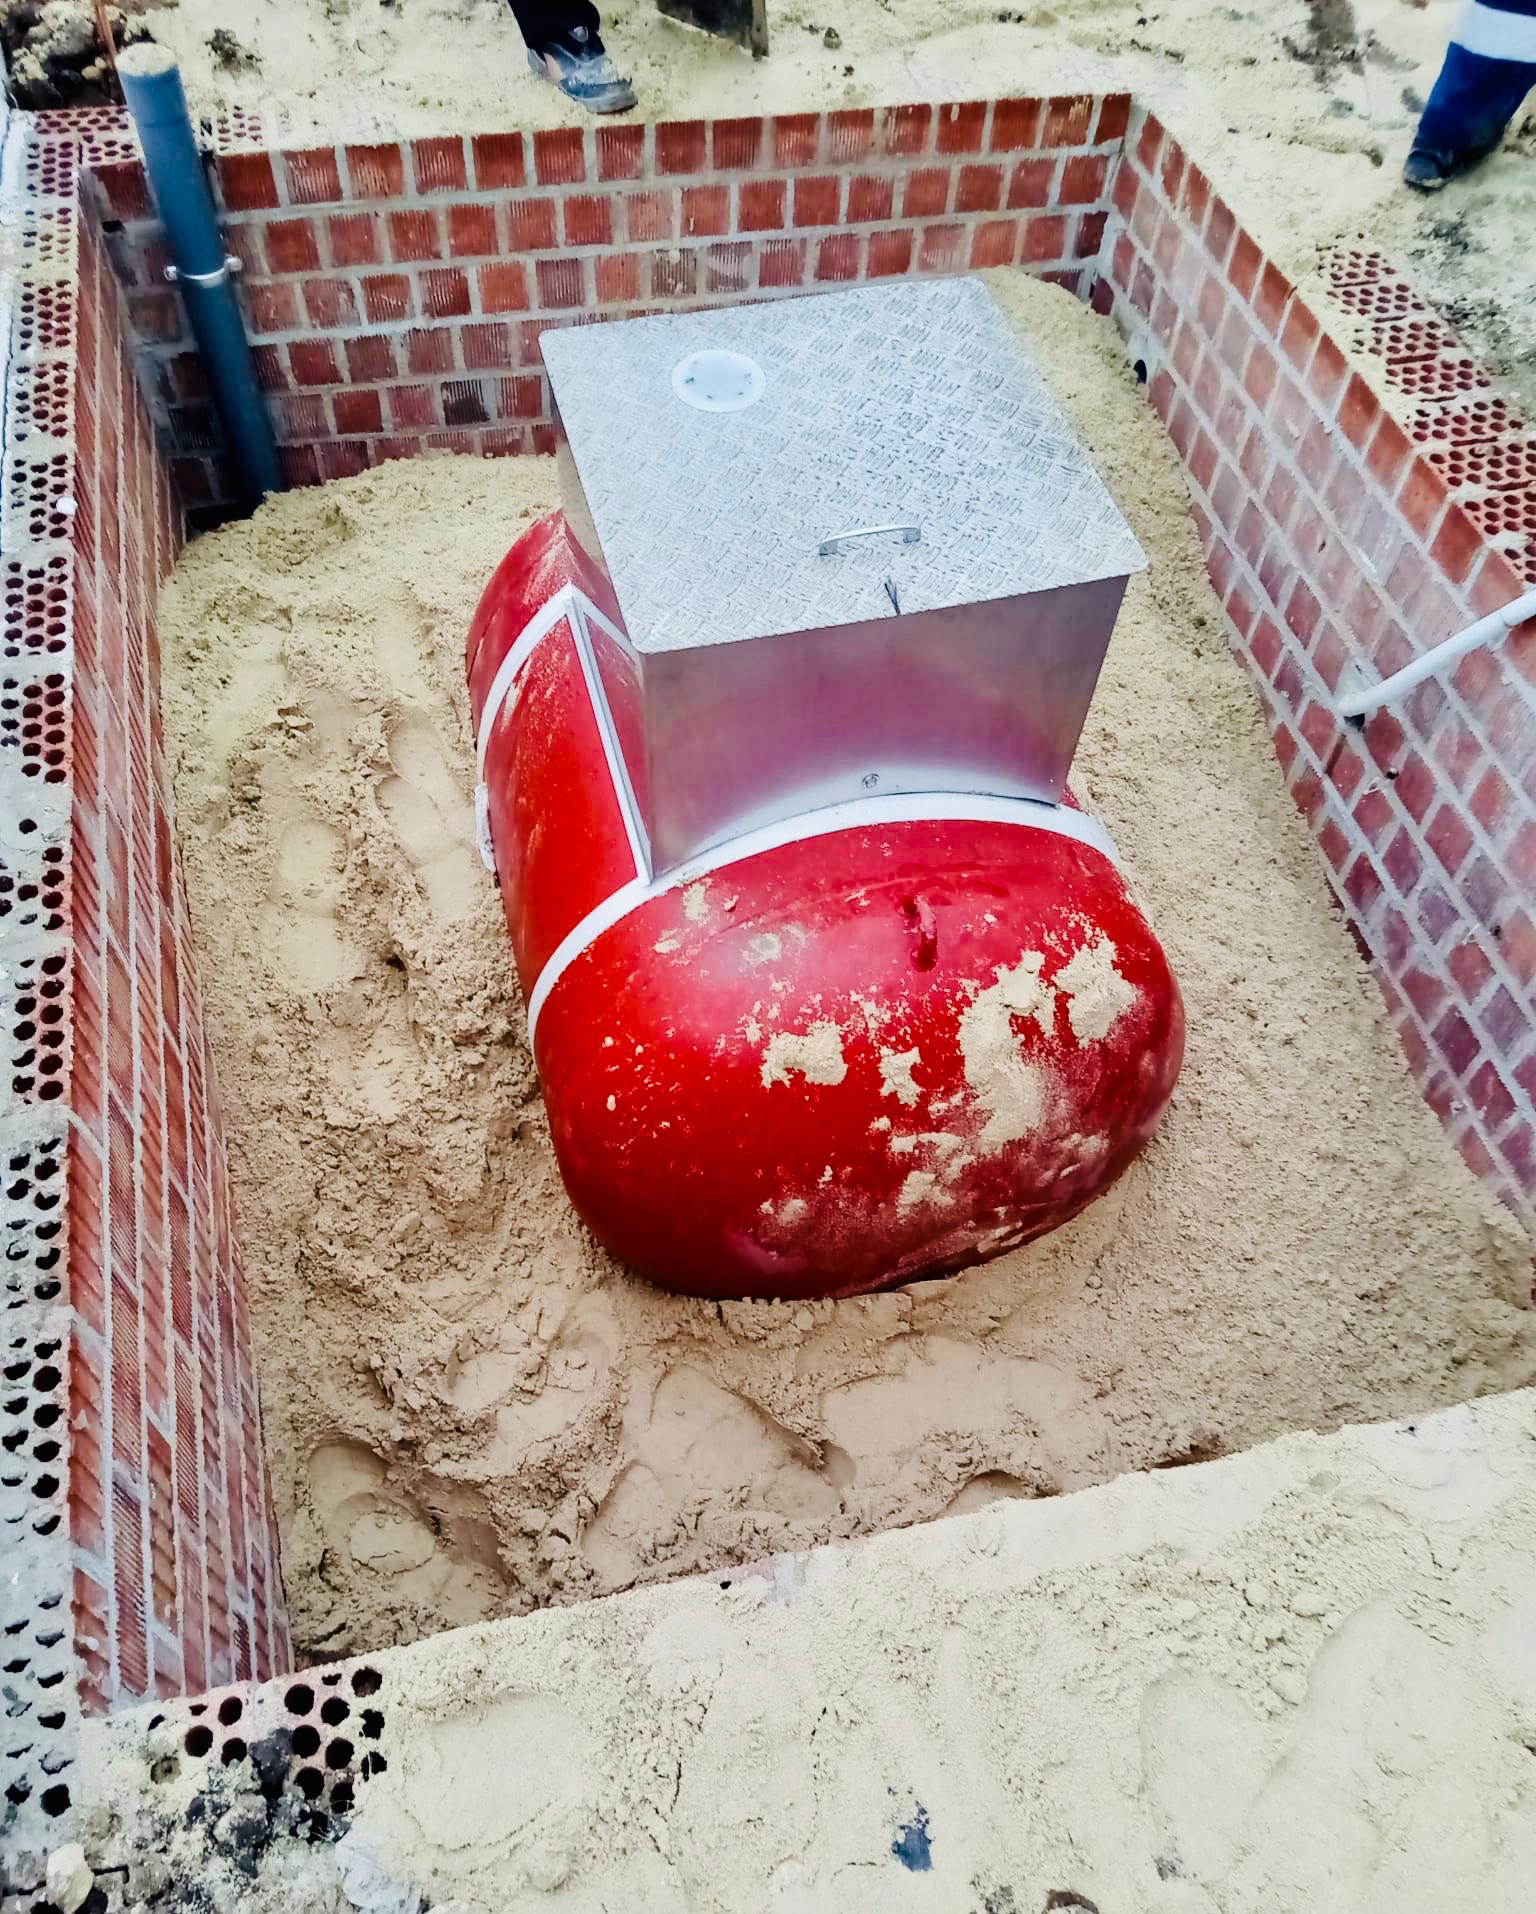 Iberclimagas deposito enterrado en malaga